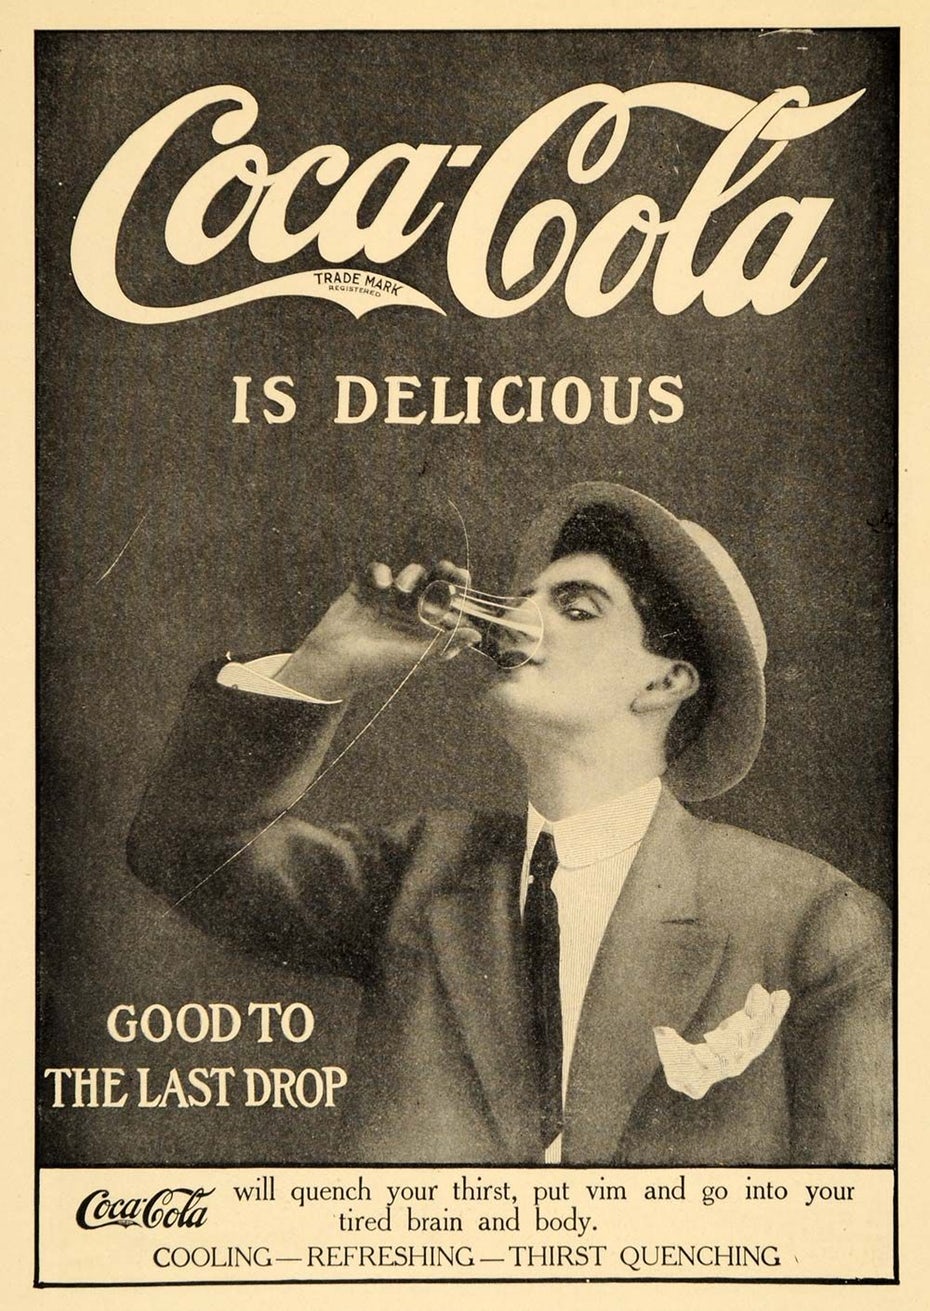  Черно-белая реклама Coca-Cola "width =" 1000 "height =" 1410 "/> 
 
<figcaption> Реклама Coca-Cola 1920-х годов. Via Coca-Cola </figcaption></figure>
<p> <span style=